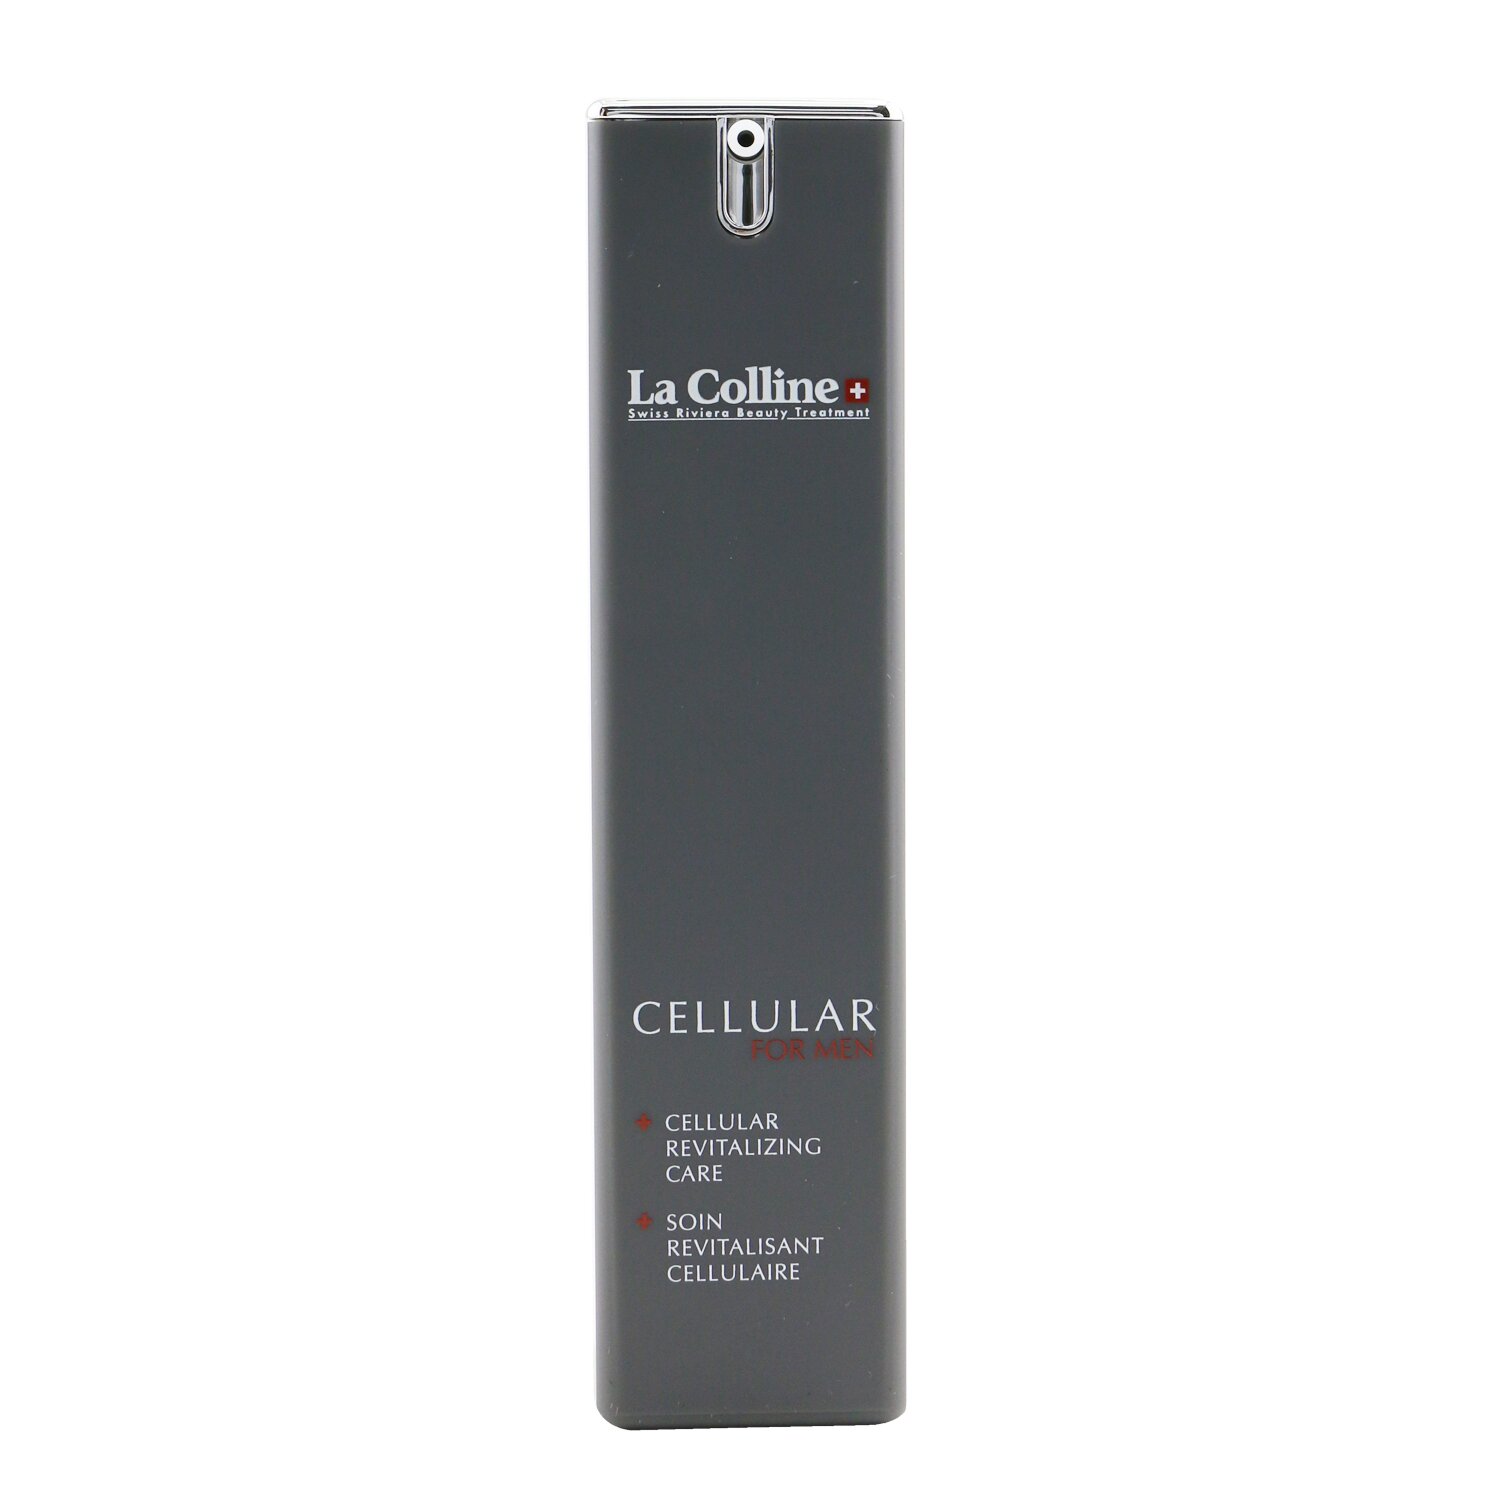 La Colline - Cellular For Men Cellular Revitalizing Care - 多功能保濕霜